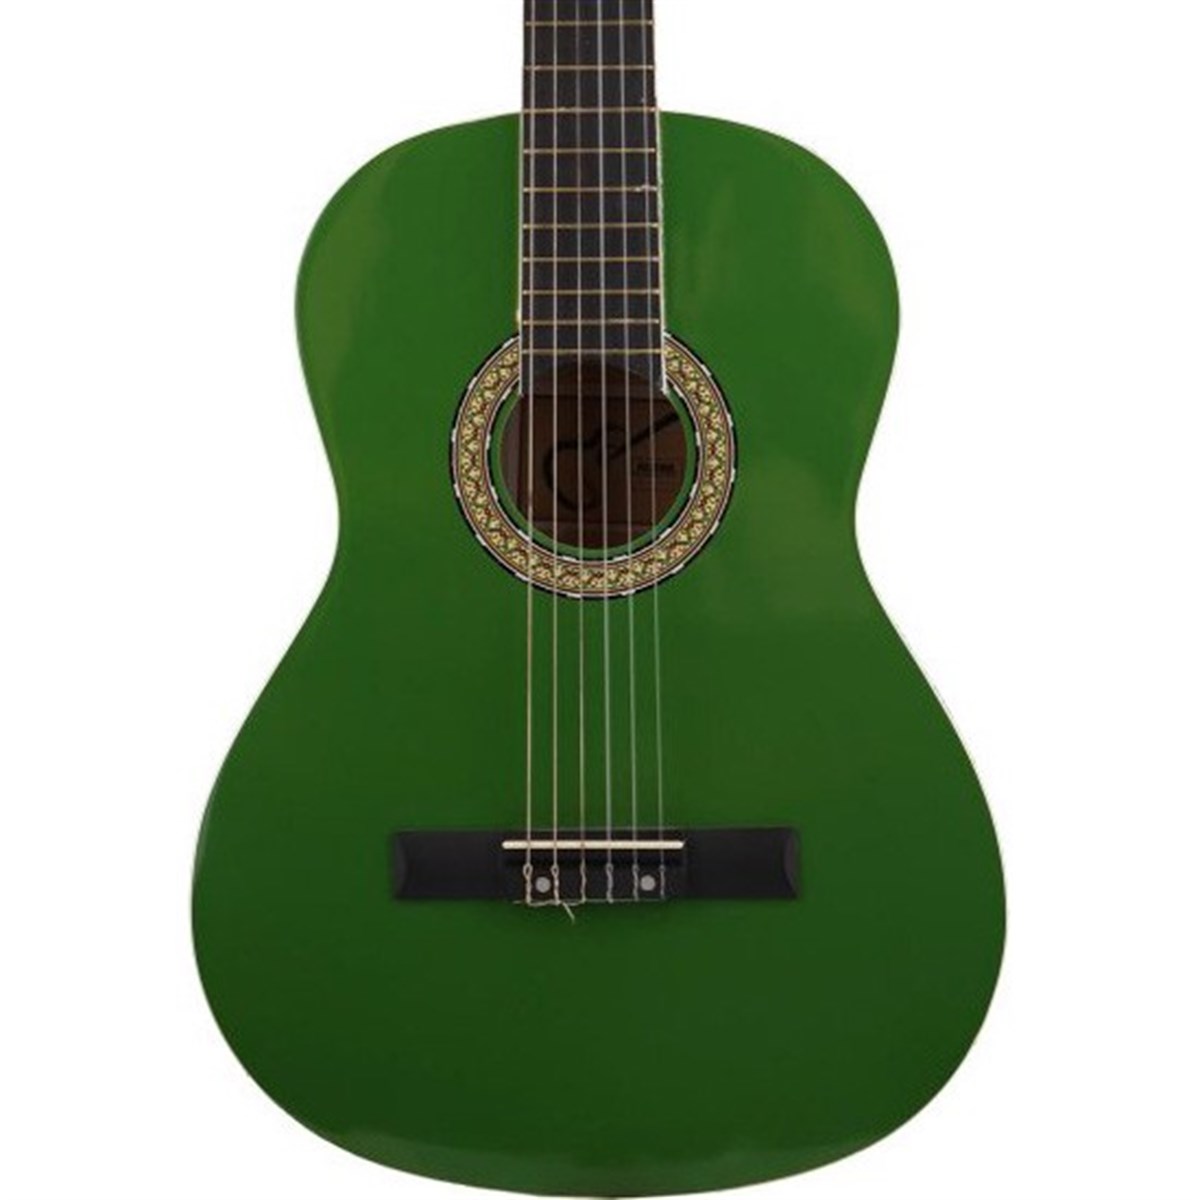 Almira MG917-GRN 4/4 Klasik Gitar Yeşil | yetenekmarket